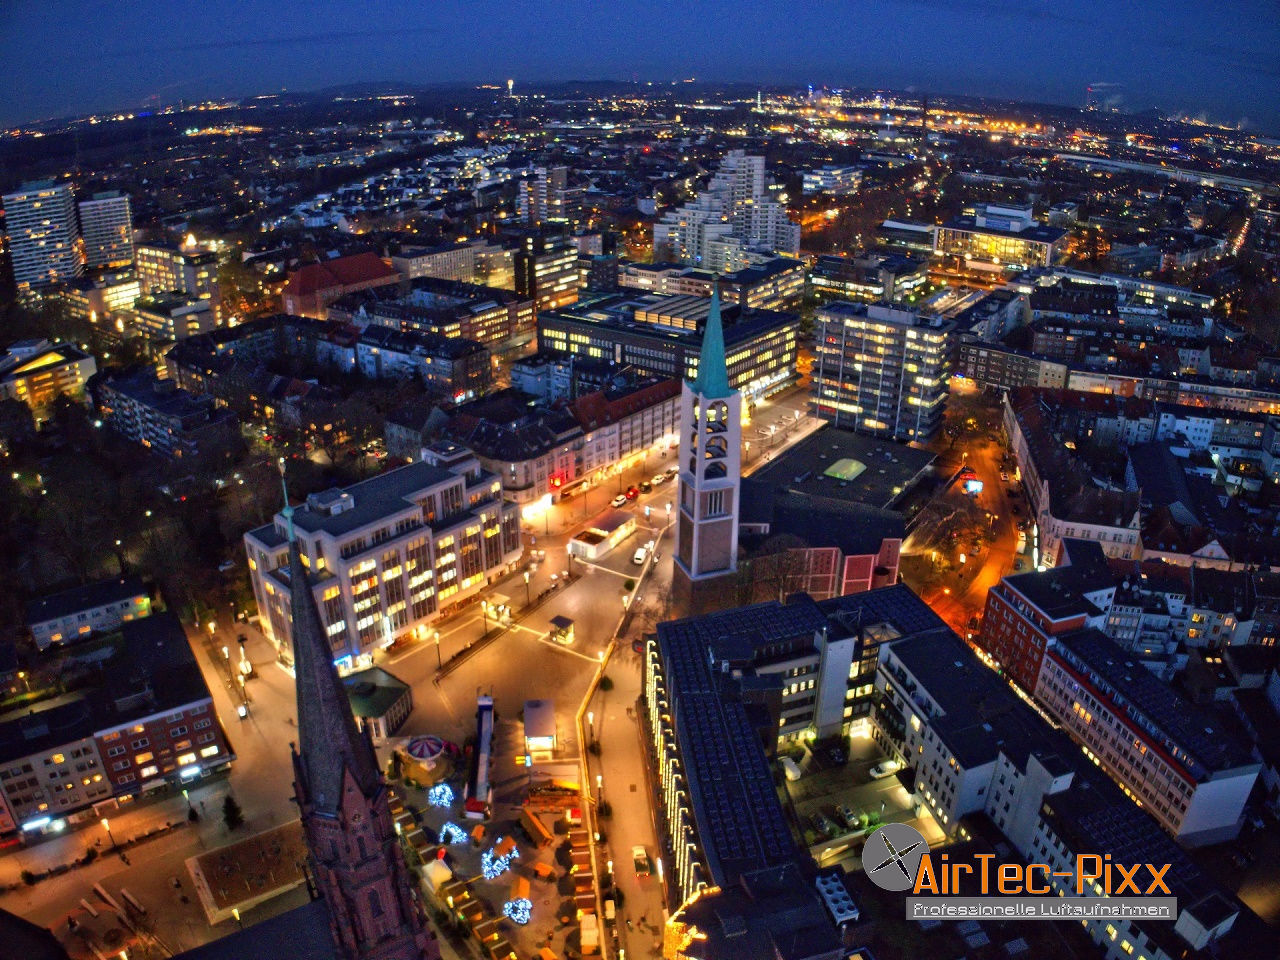 Airtec Pixx Ug Haftungsbeschrankt Dusseldorf Zietenstrasse 57 Offnungszeiten Angebote